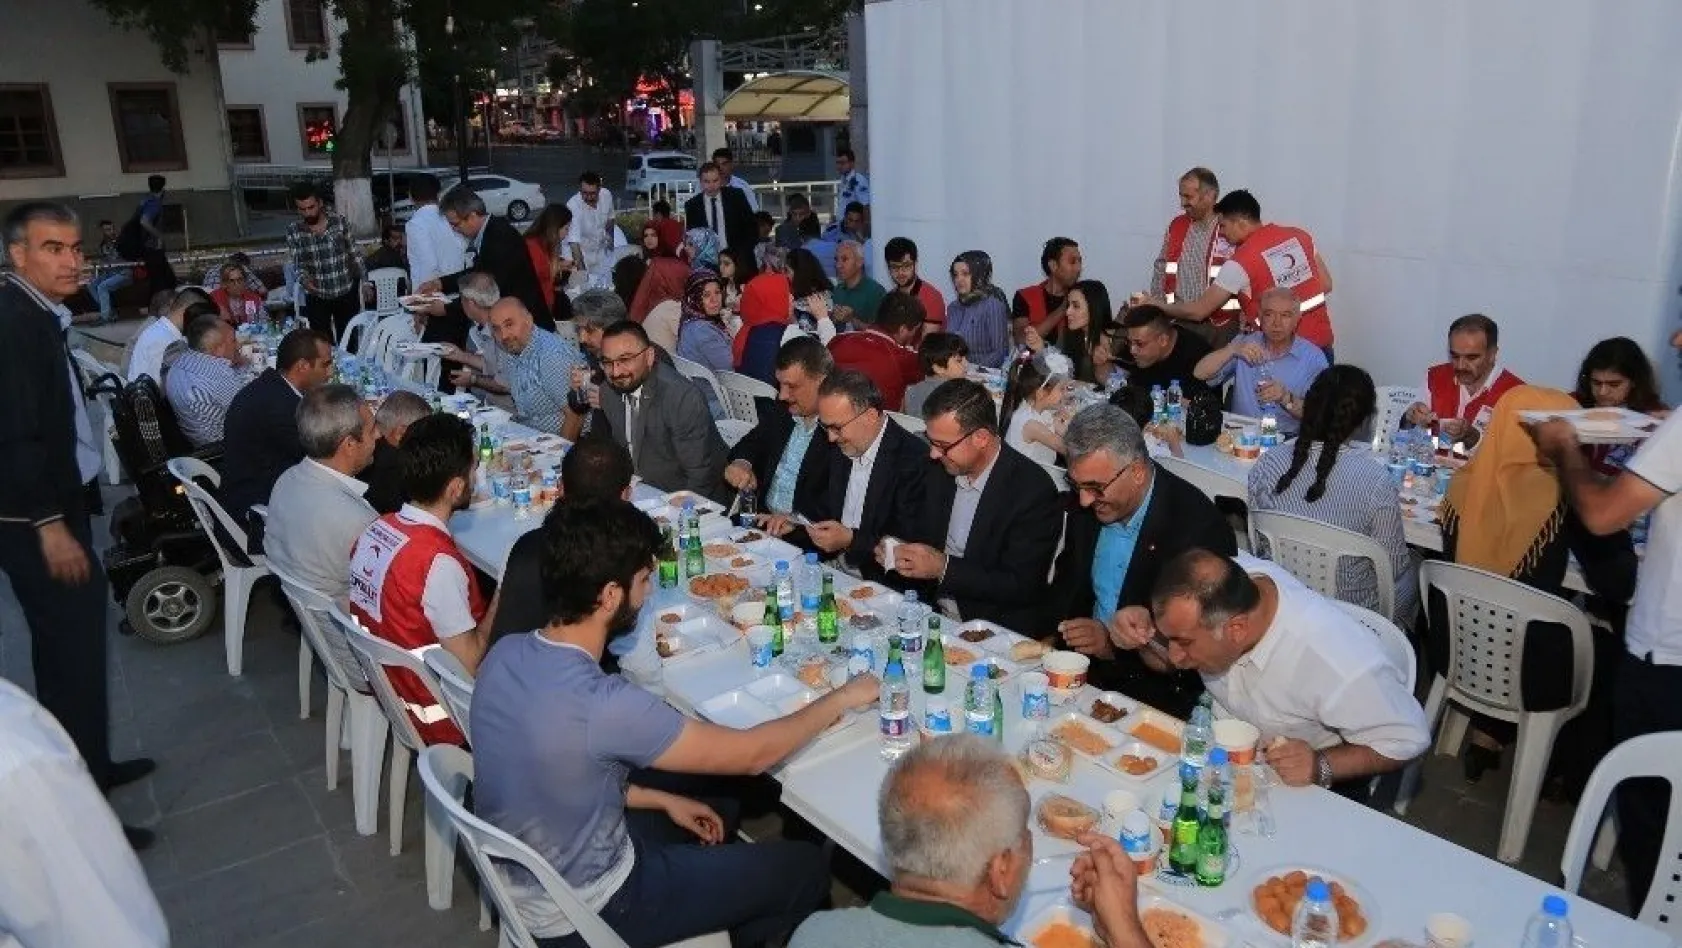 Battalgazi Belediyesi İftar Çadırında 2 bin 500 kişiye iftar verildi
